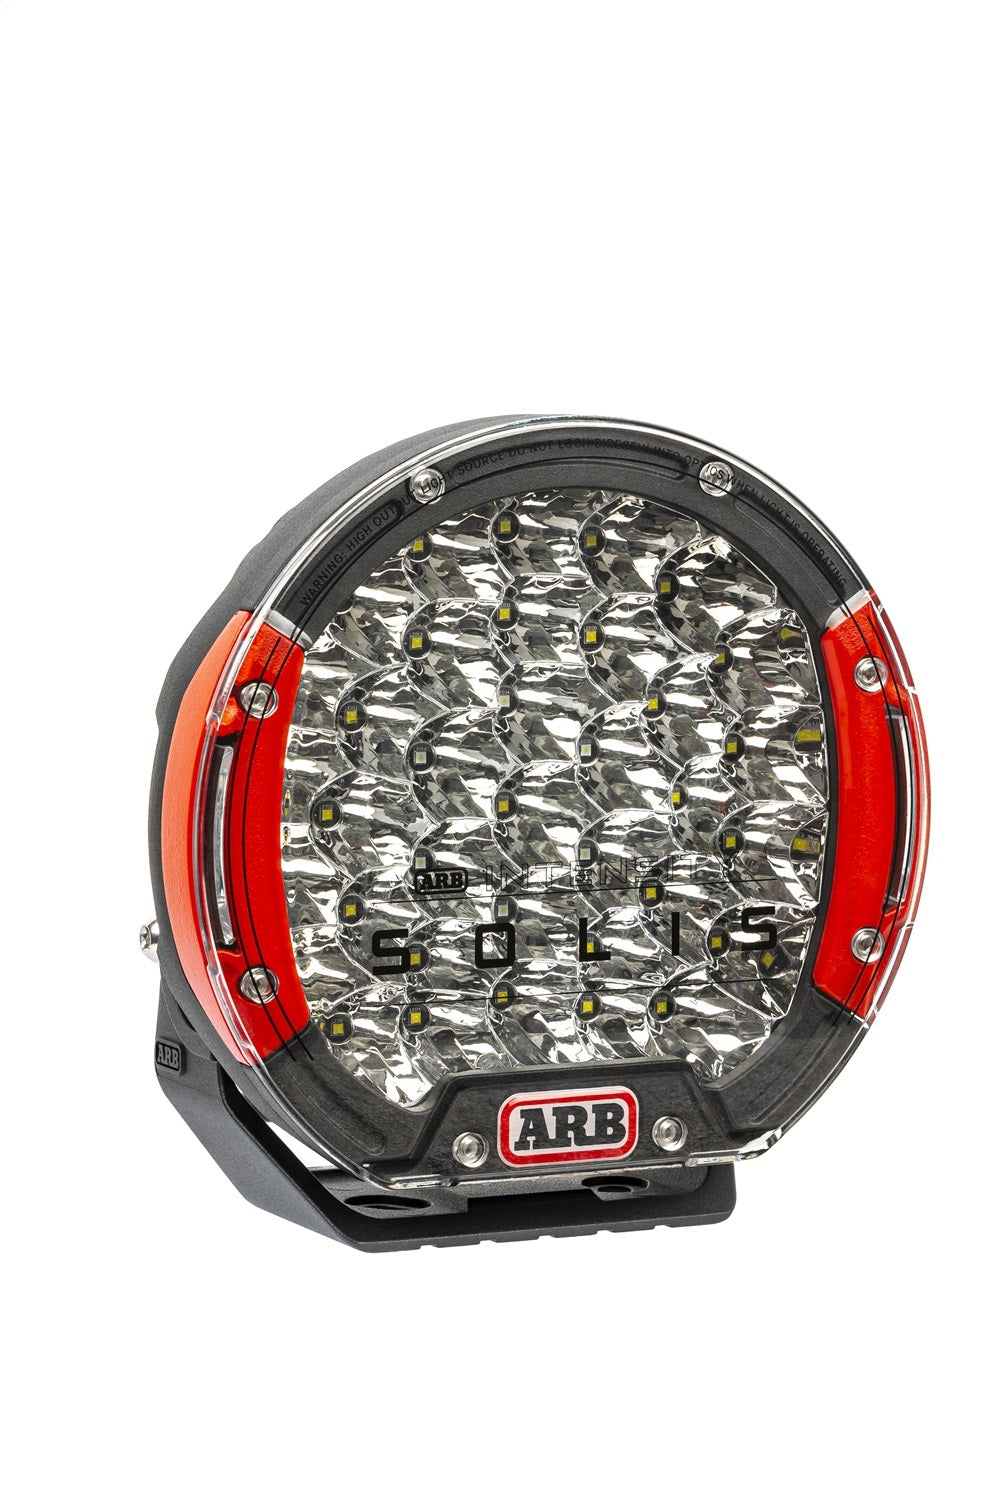 ARB 4x4 Accessories SJB36F Intensity SOLIS LED Driving Light